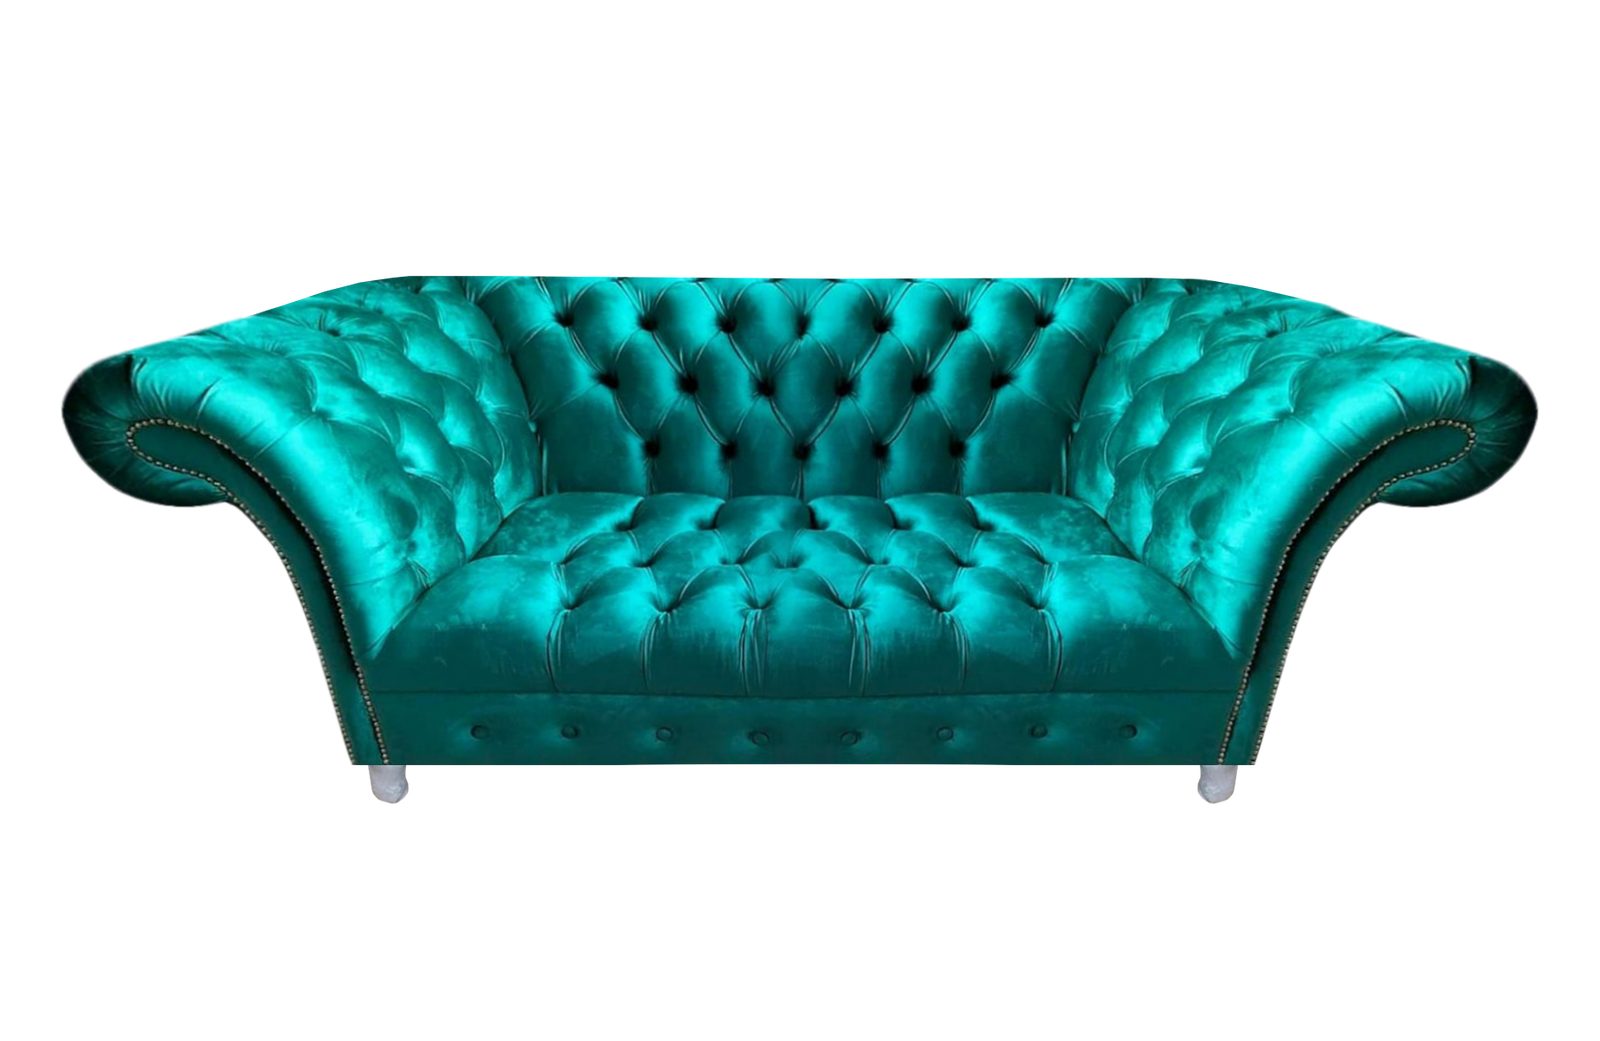 JVmoebel Chesterfield-Sofa Wohnzimmer Polster Möbel Sofa Couch Zweisitzer Blau Neu Einrichtung, 1 Teile, Made in Europa